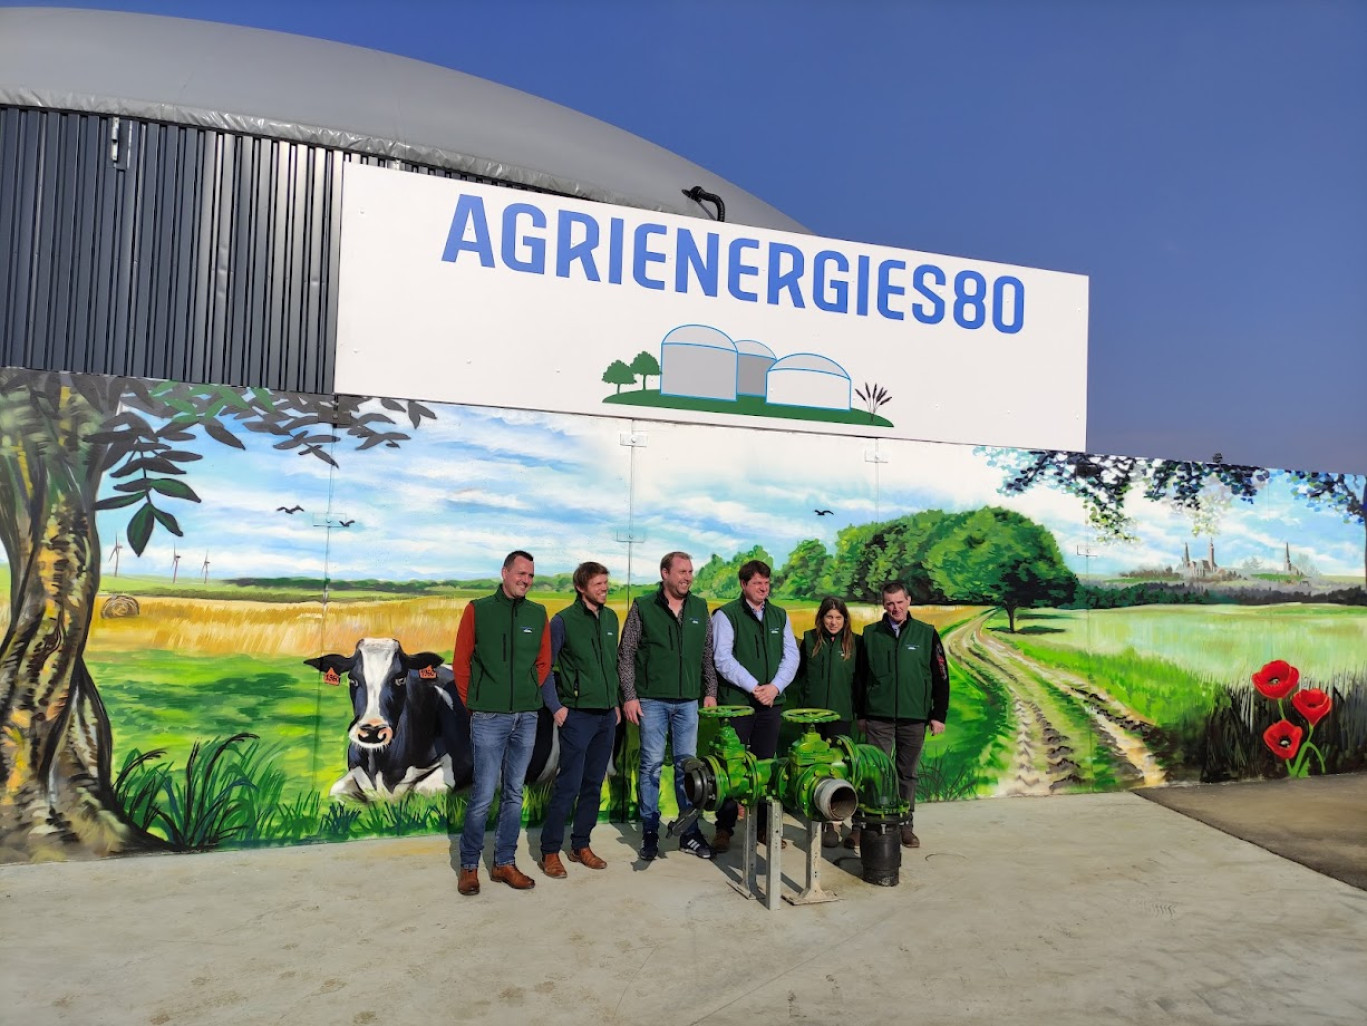 Hubert Dehaspe, Florian Dreue, Arnaud Gellynck, Sébastien Lhermitte, Céline et Frédéric Mahieus devant l'entrée du site de méthanisation agricole.